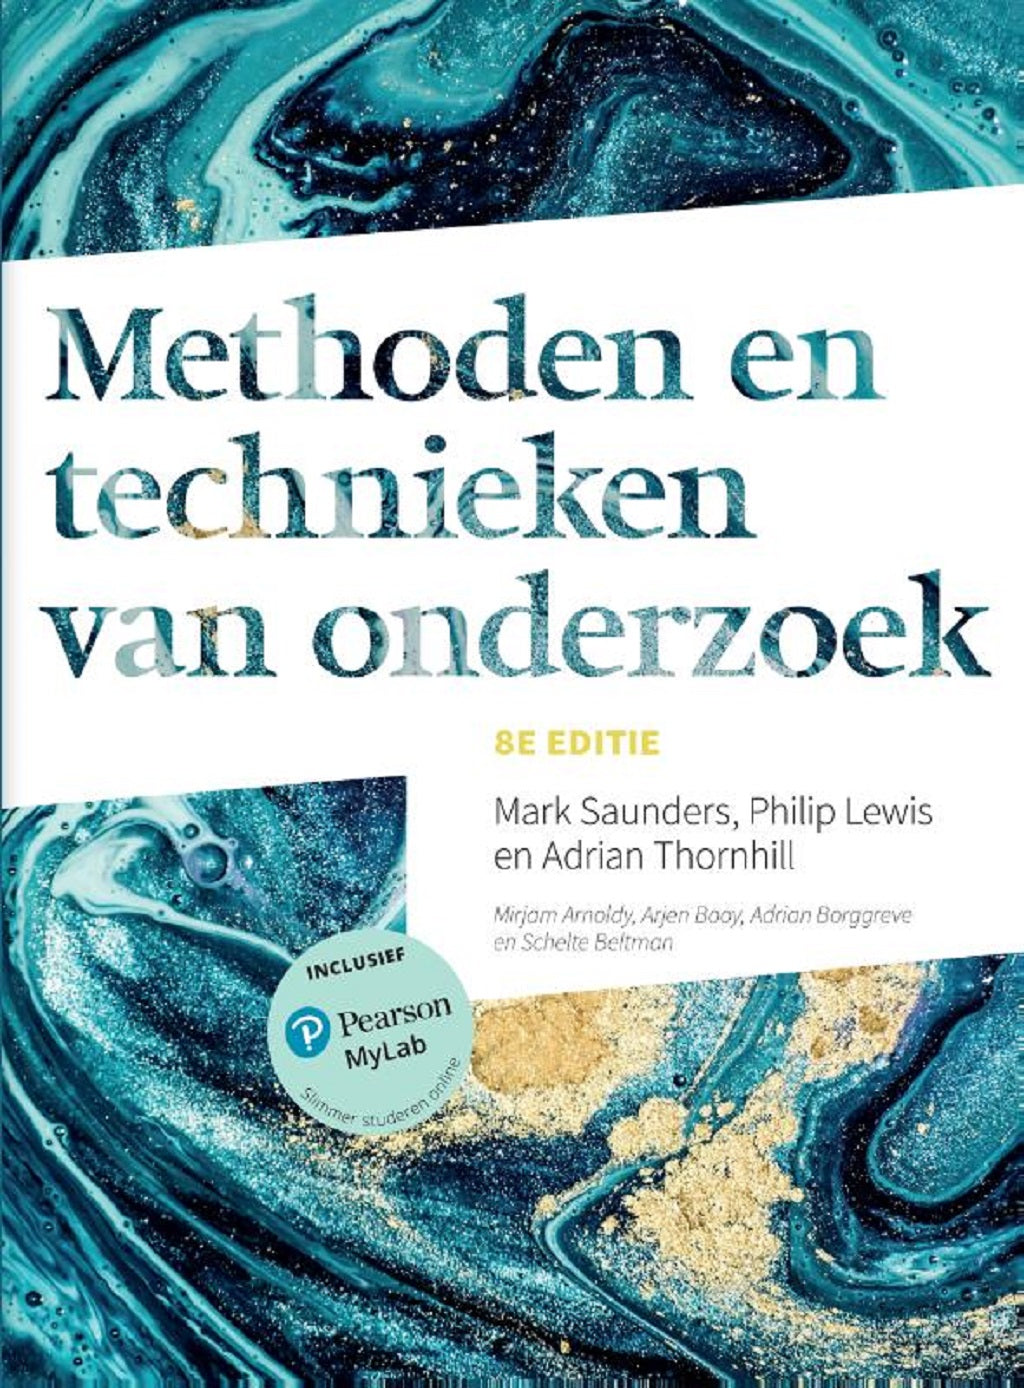 Methoden en technieken van onderzoek, 8e editie (Print boek + MyLab toegangscode)